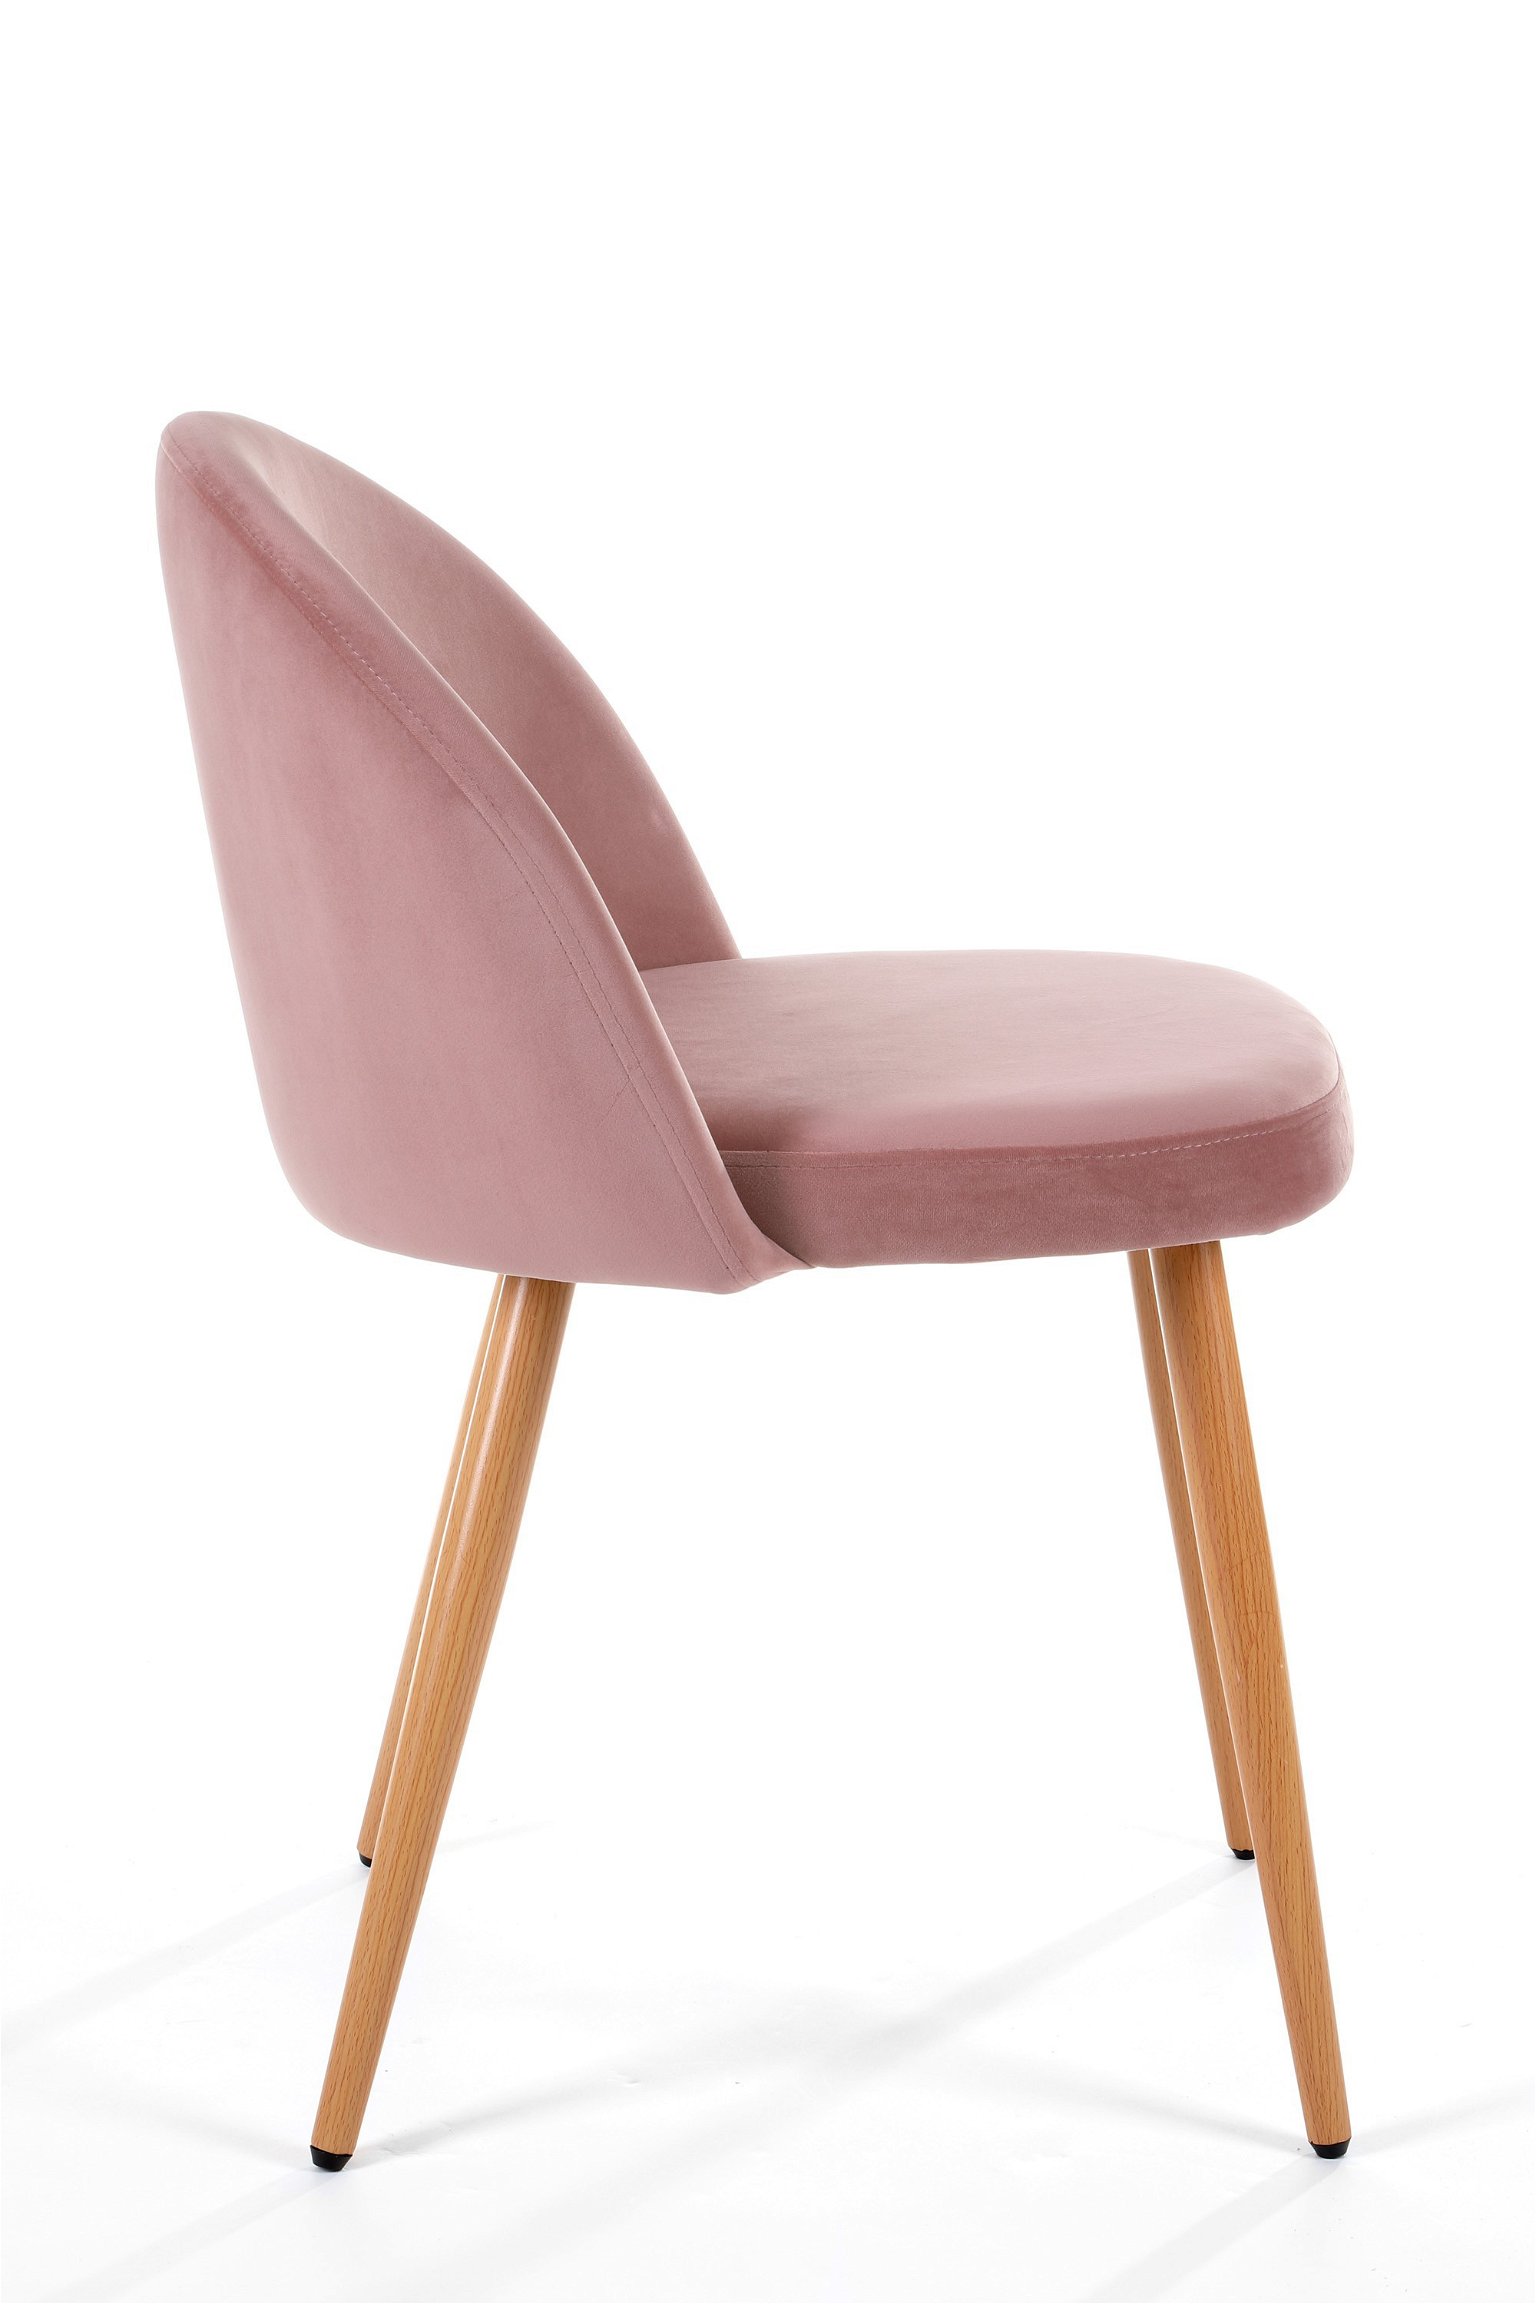 4-rių kėdžių komplektas SJ.075, rožinis - 2